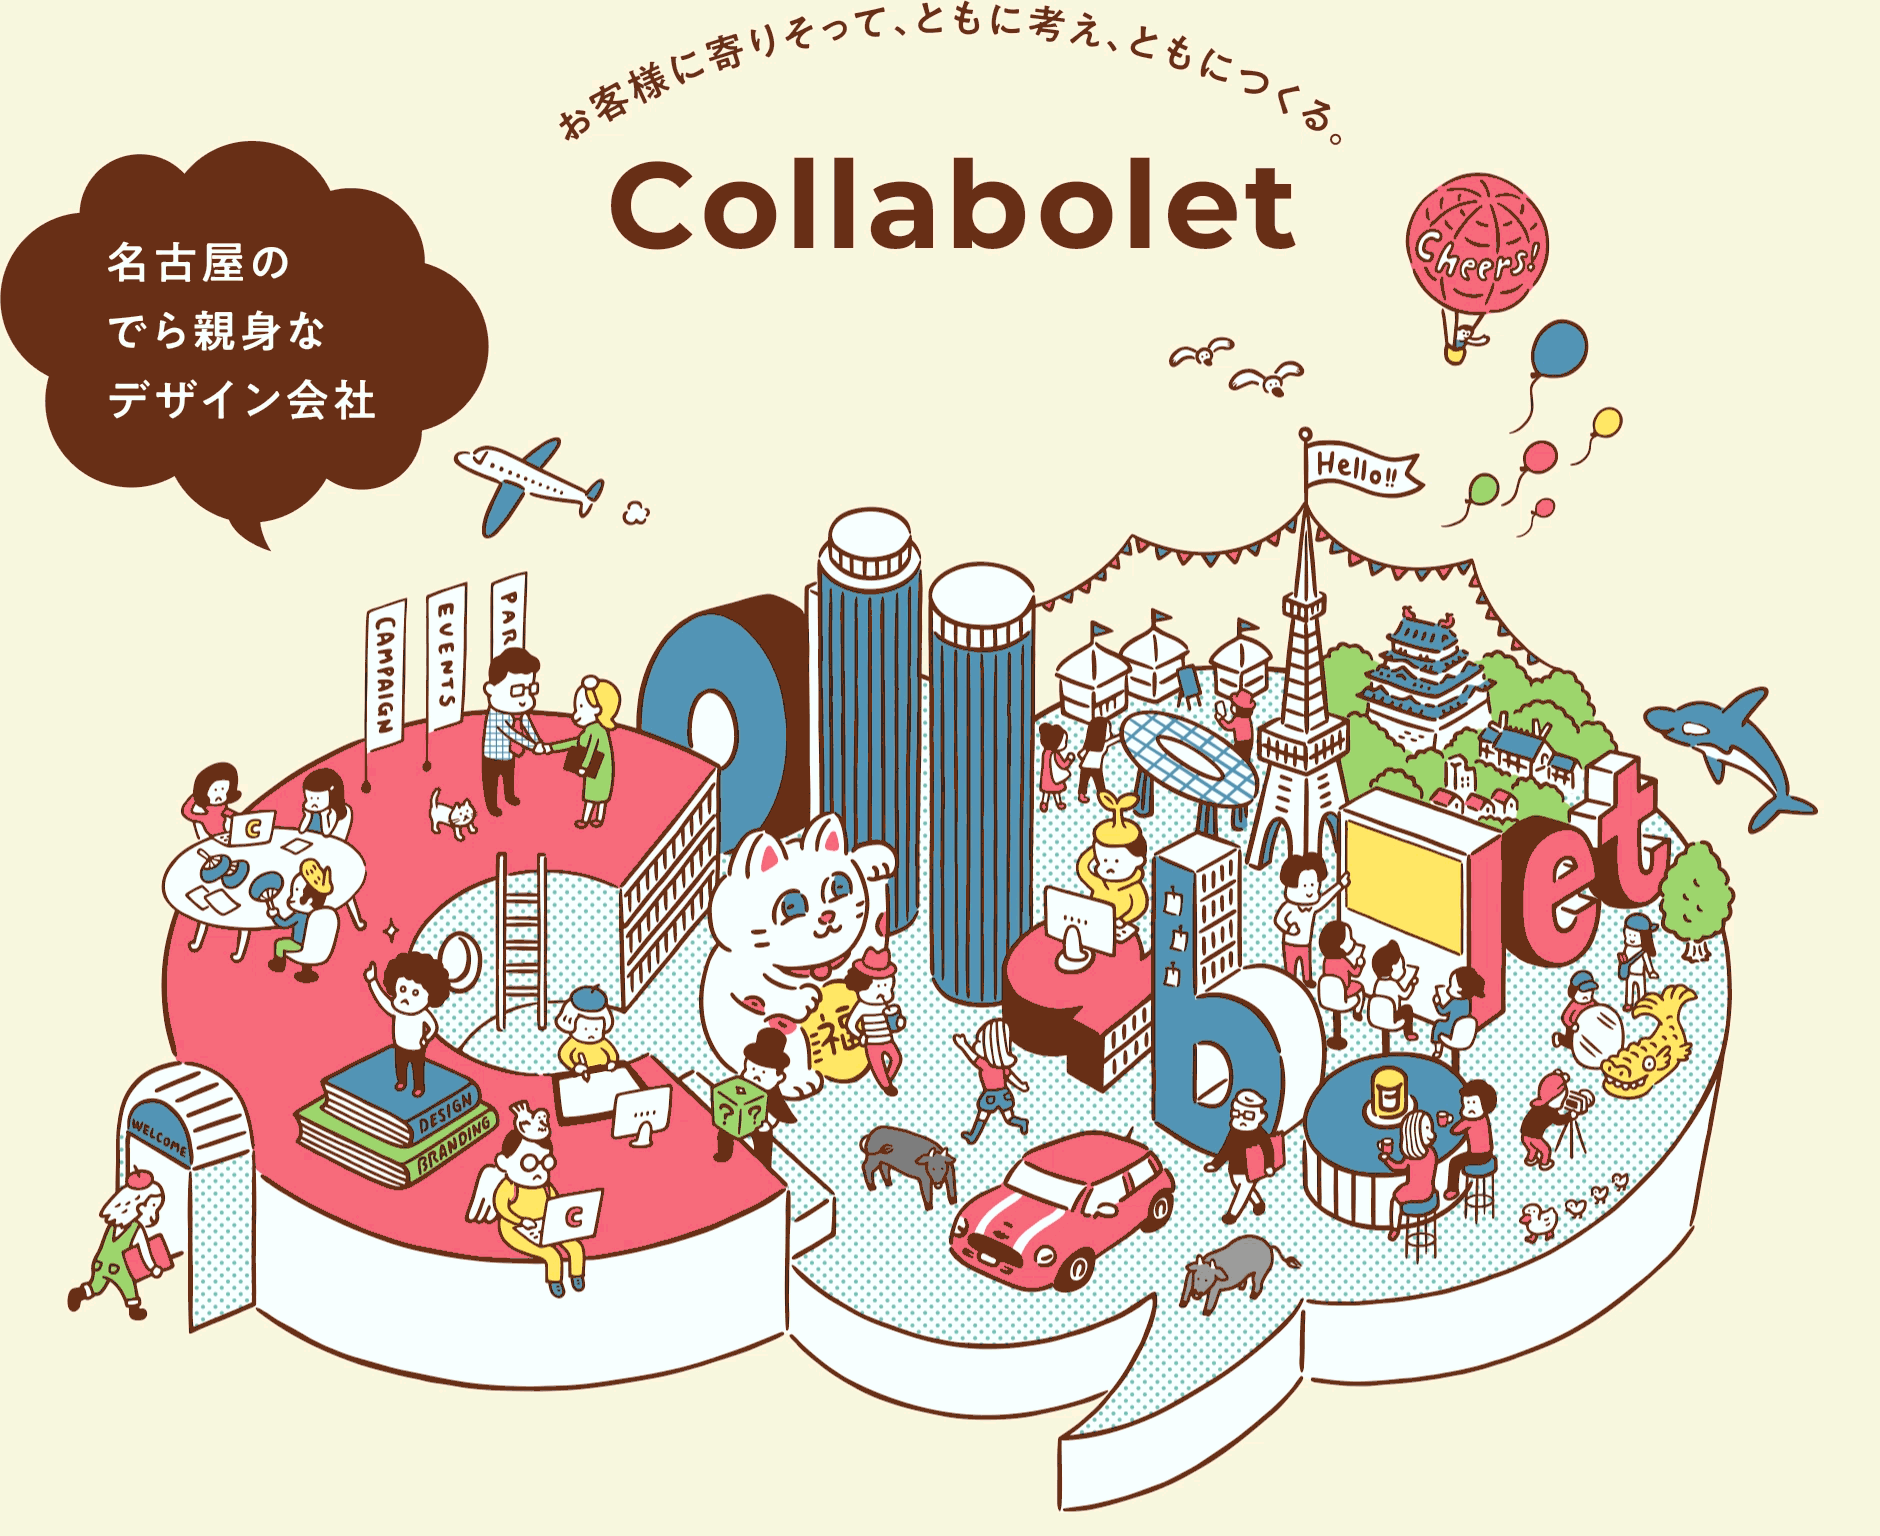 お客様に寄り添って、ともに考え、ともにつくる。名古屋のでら親身なデザイン会社Collabolet